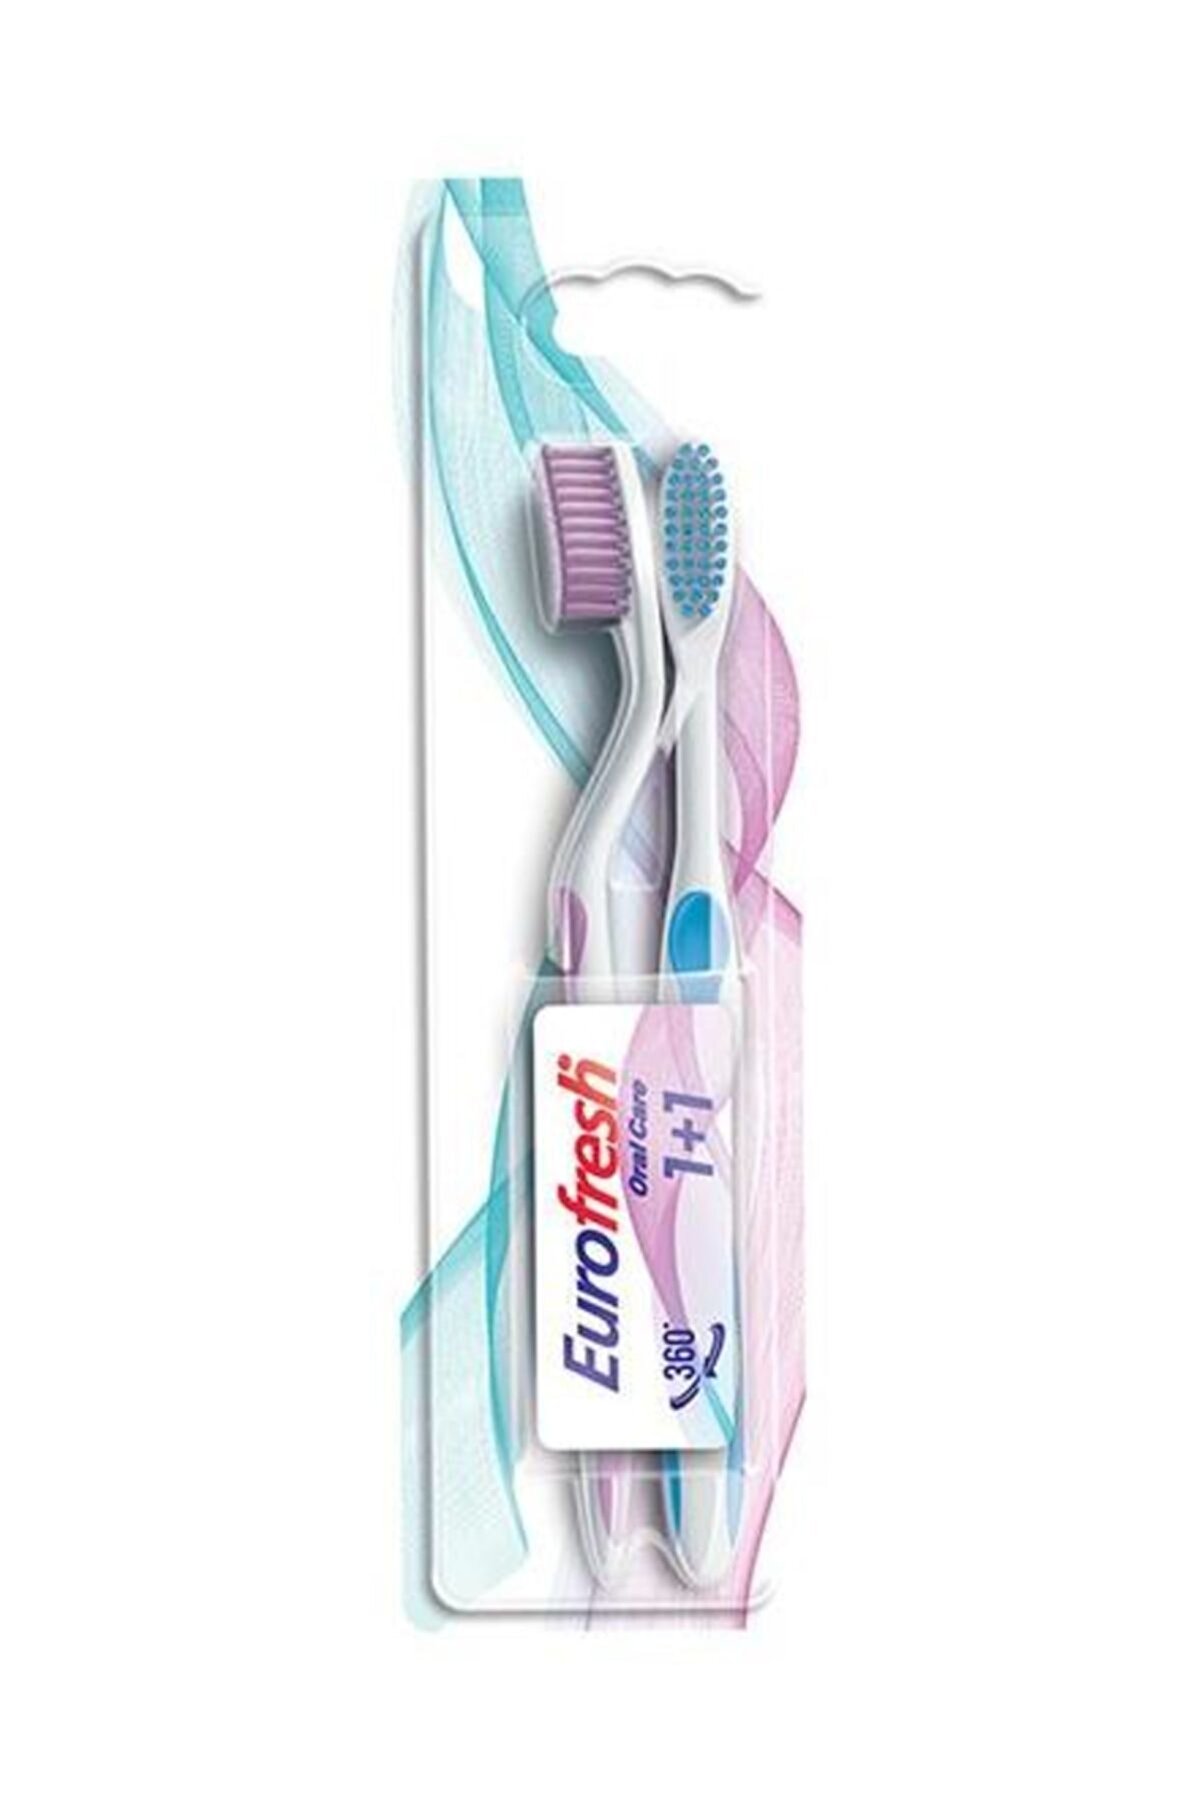 Farmasi 9700789 Eurofresh Oral Care 2 Adet Diş Fırçası Pembe-Mavi